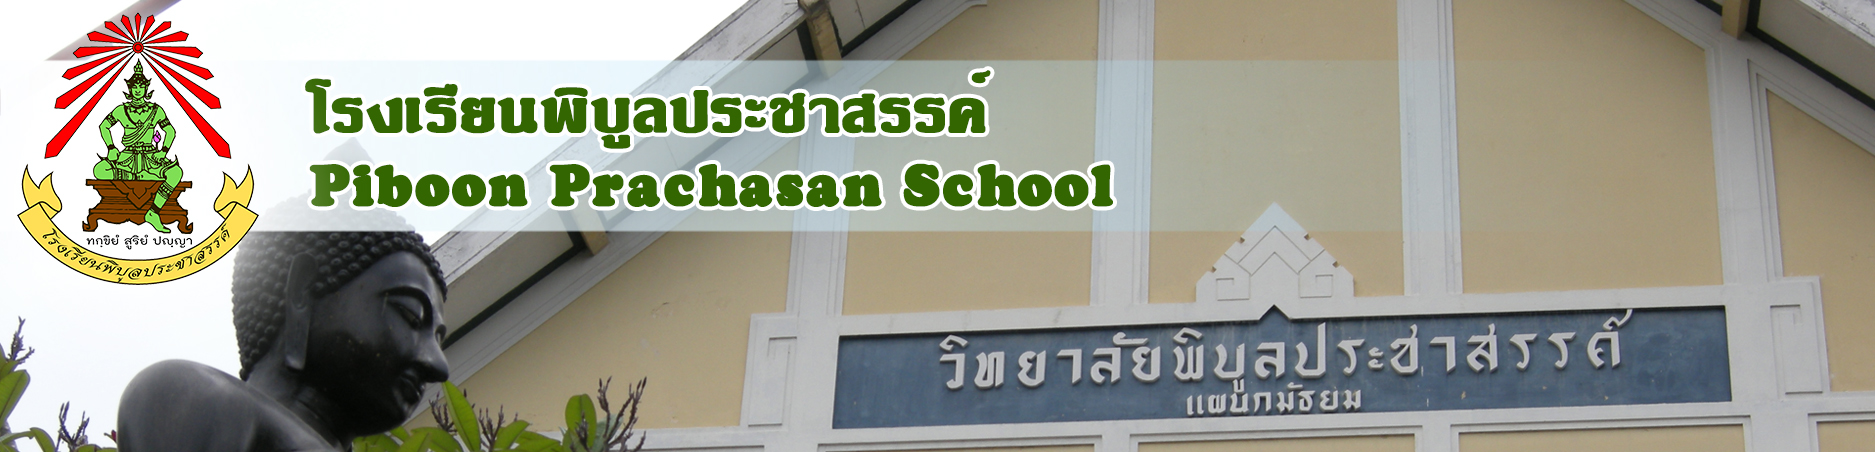 โรงเรียนพิบูลประชาสรรค์ :: Piboon Prachasan School